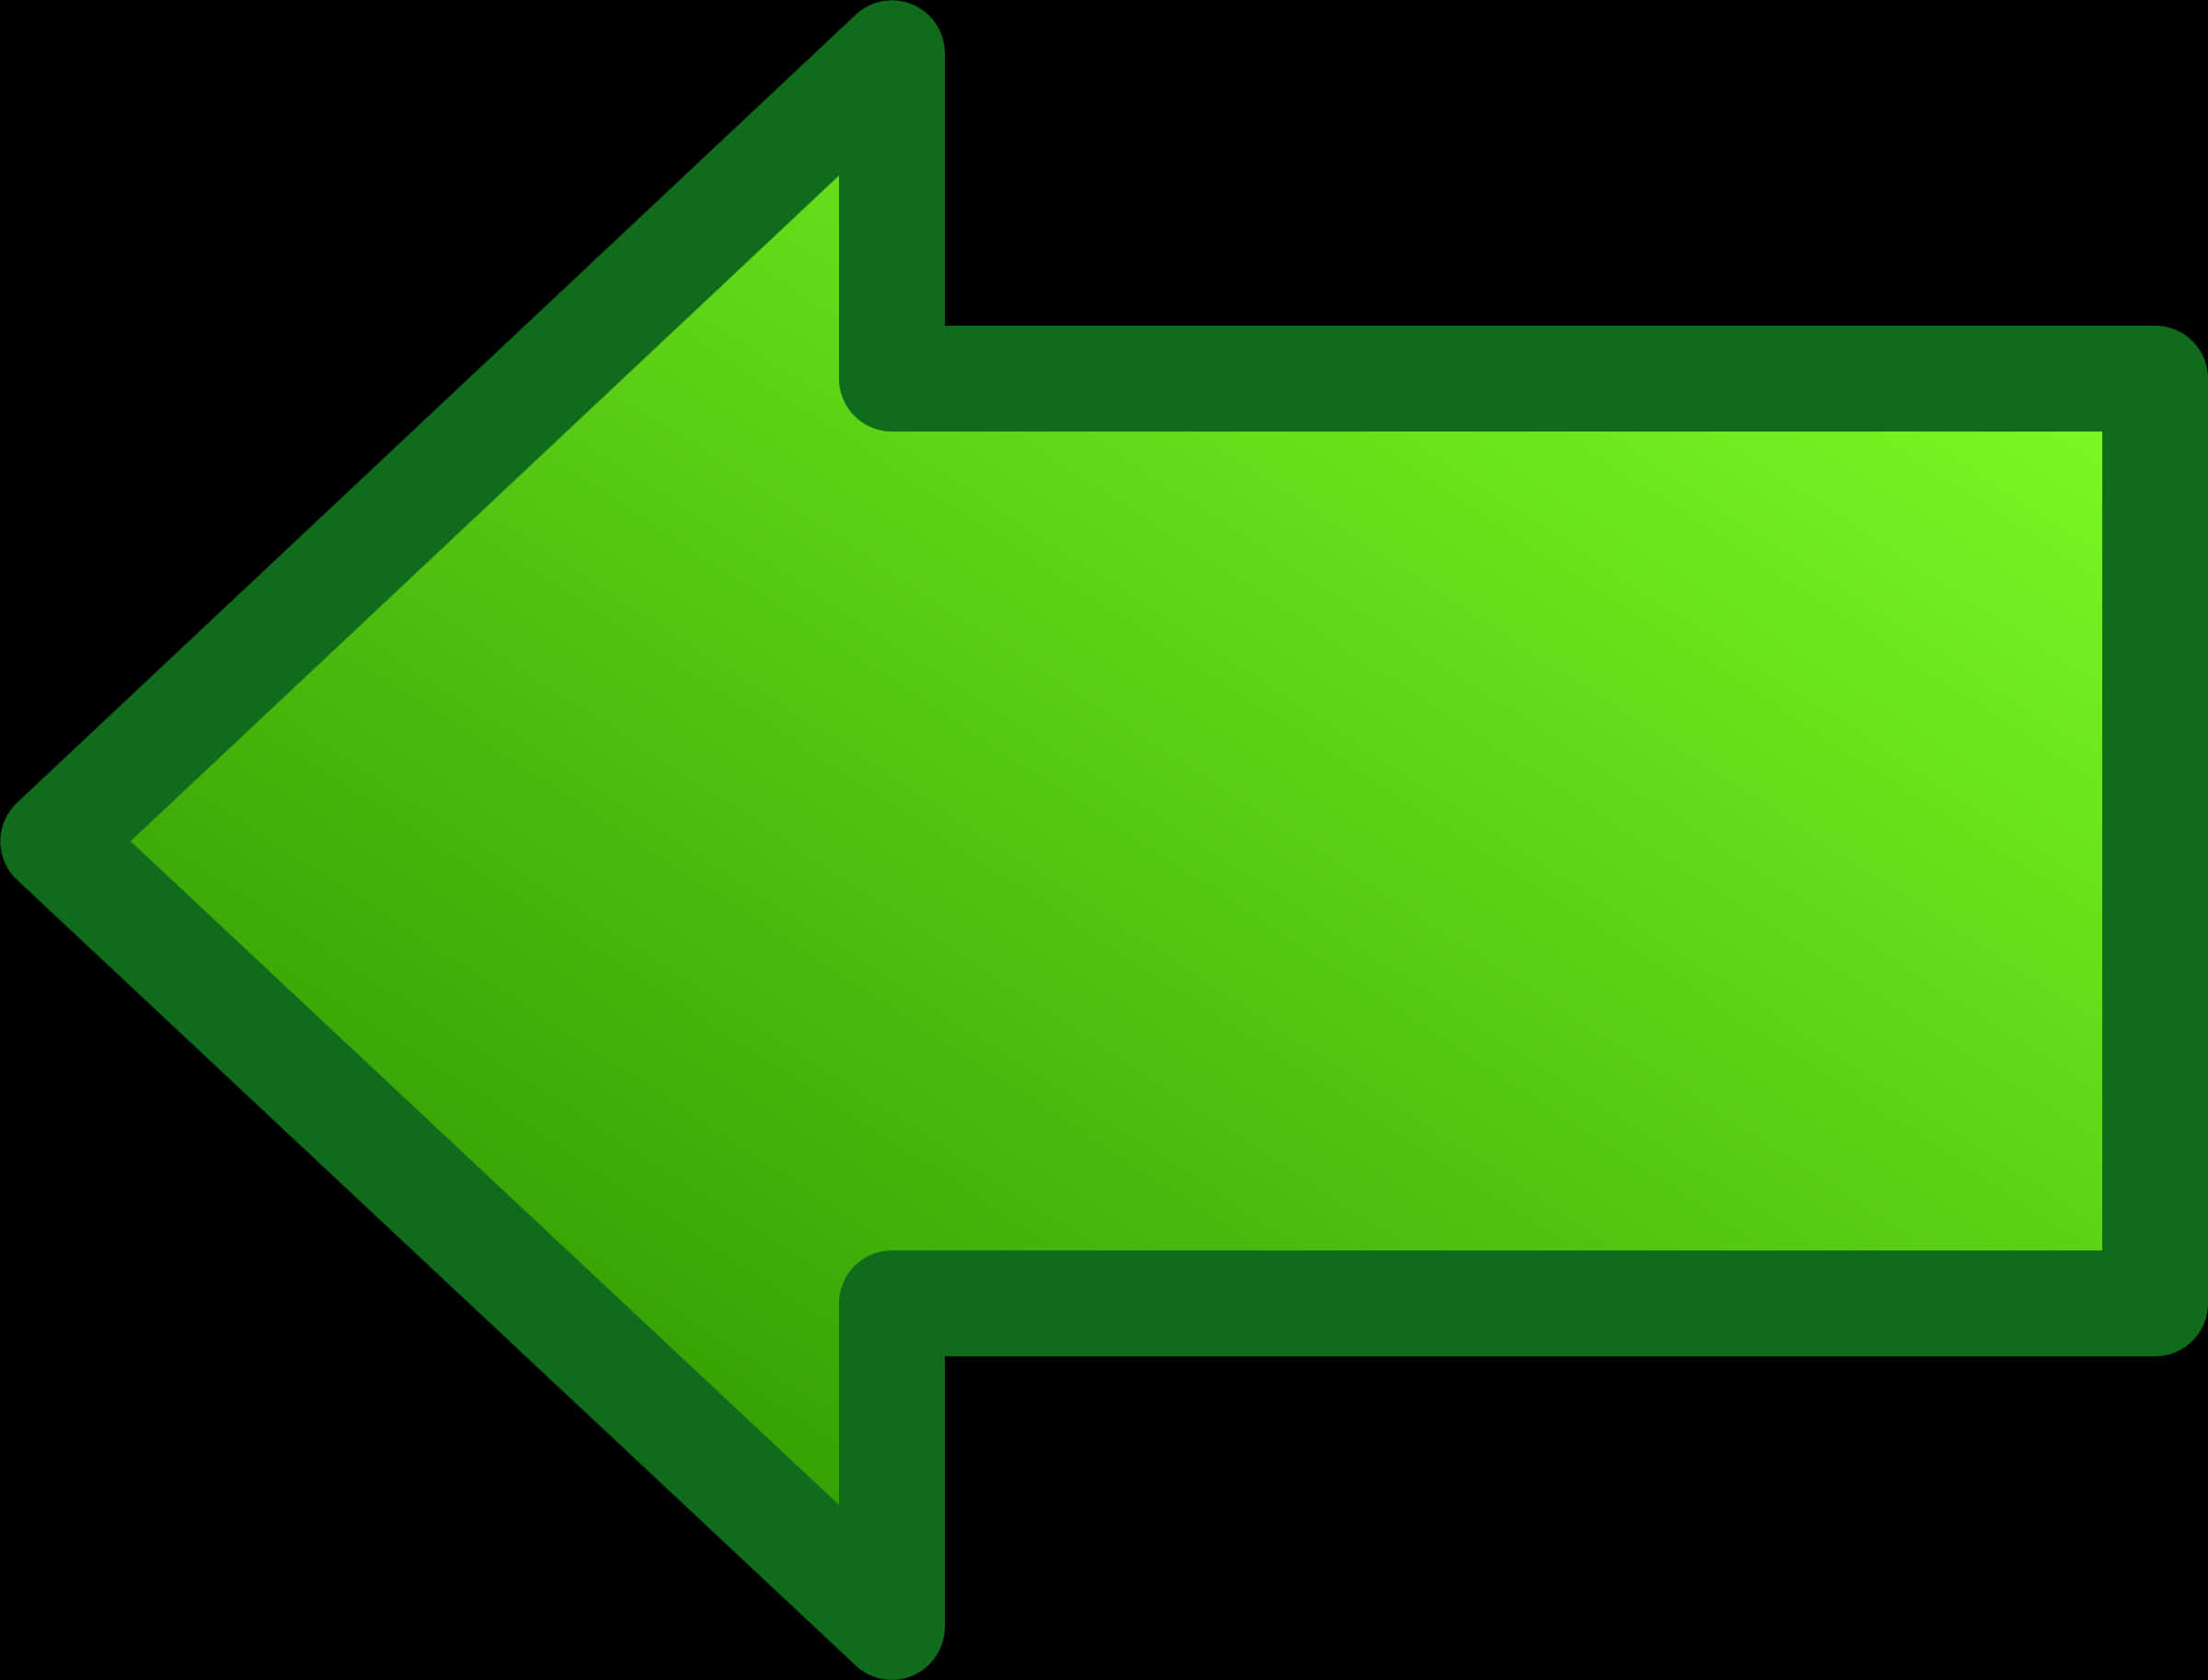 Green Left Arrow Icon